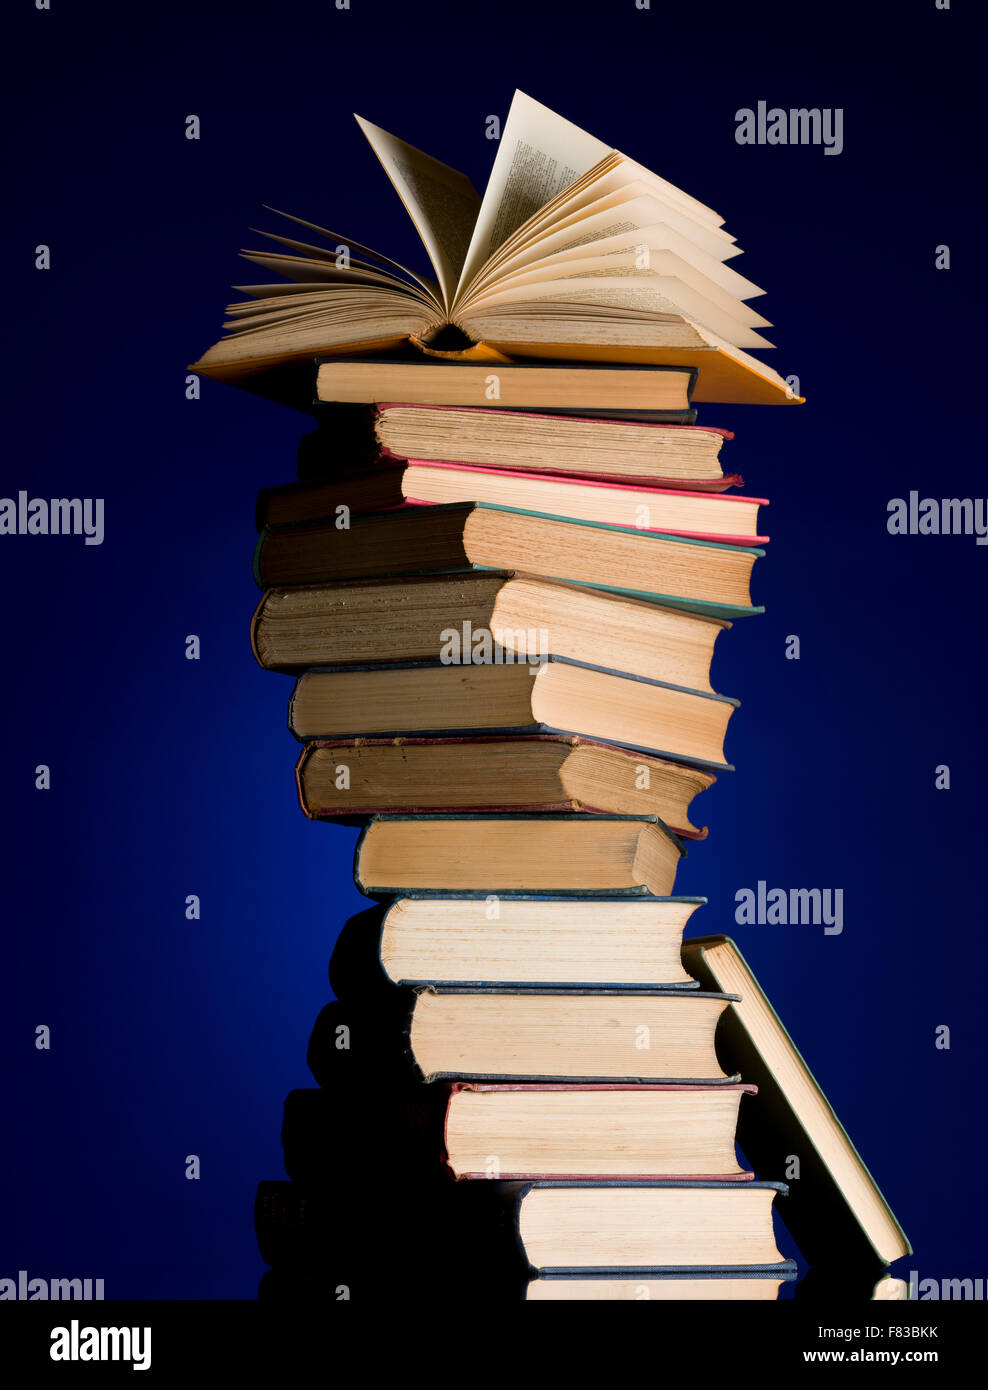 Stapel alter Bücher in eine Spirale drehen. Offenes Buch an die Spitze des Haufens. Büchersammlung. Lesen Sie, Bildung Metapher. Stockfoto